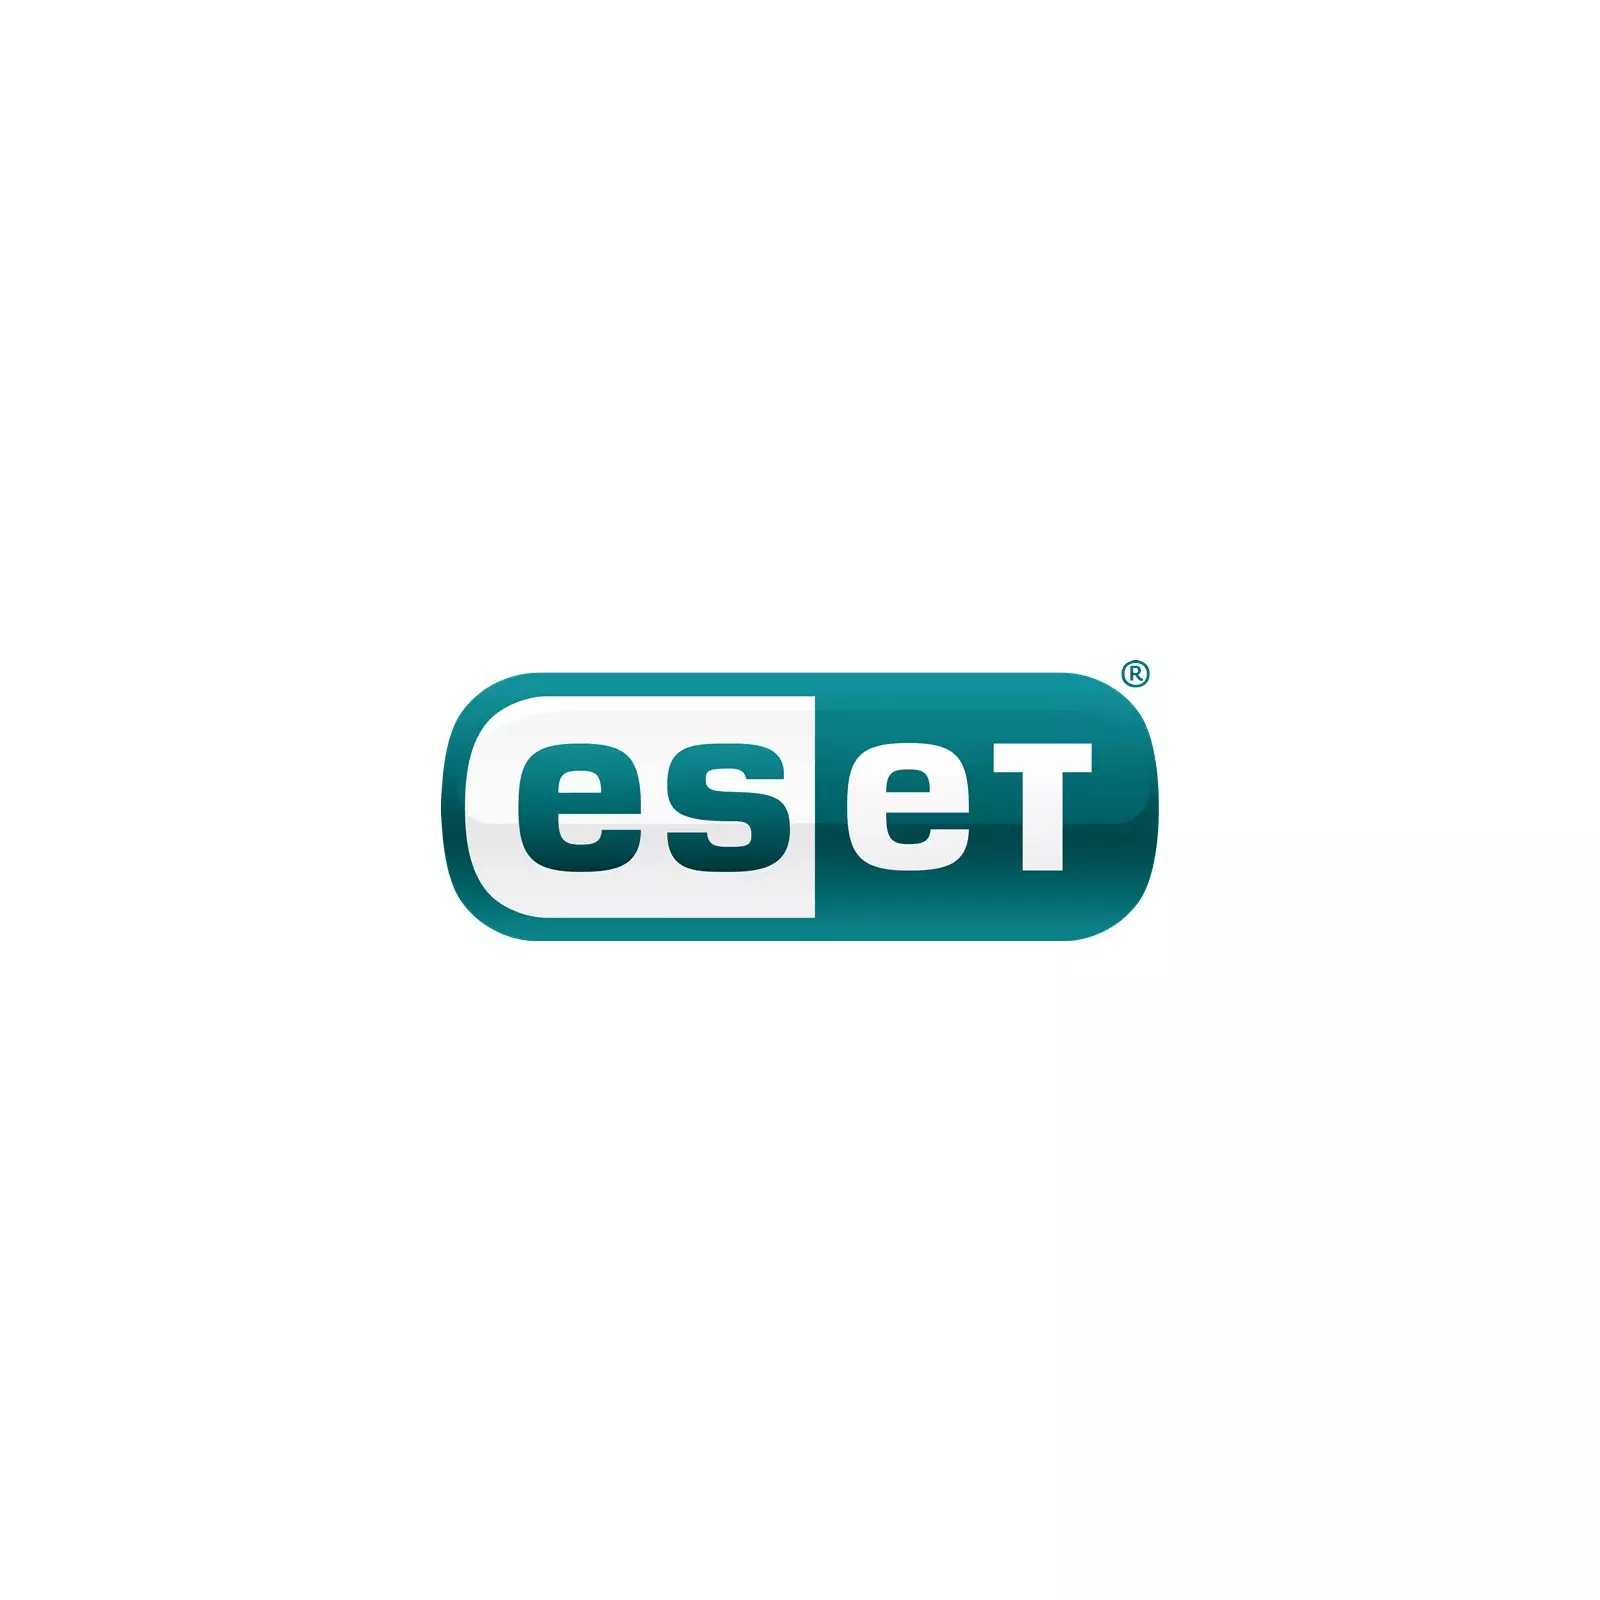 ESET EHSU-N1A10-VAKT-E Photo 1